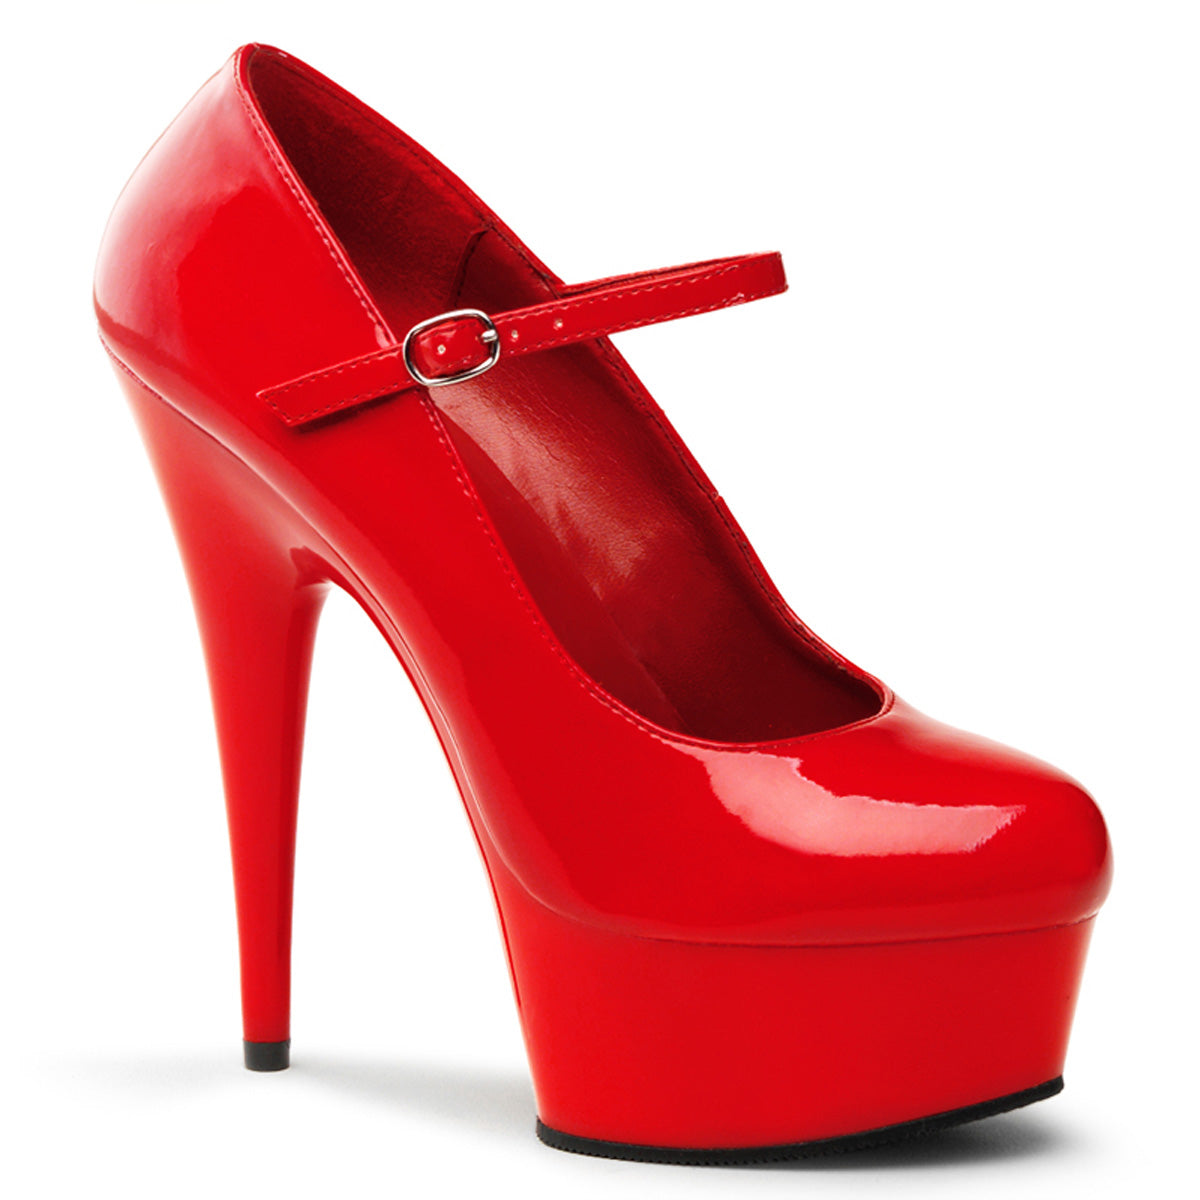 DELIGHT-687 Pleasers 6 Inch Heel Red  Stripper Platforms High Heels